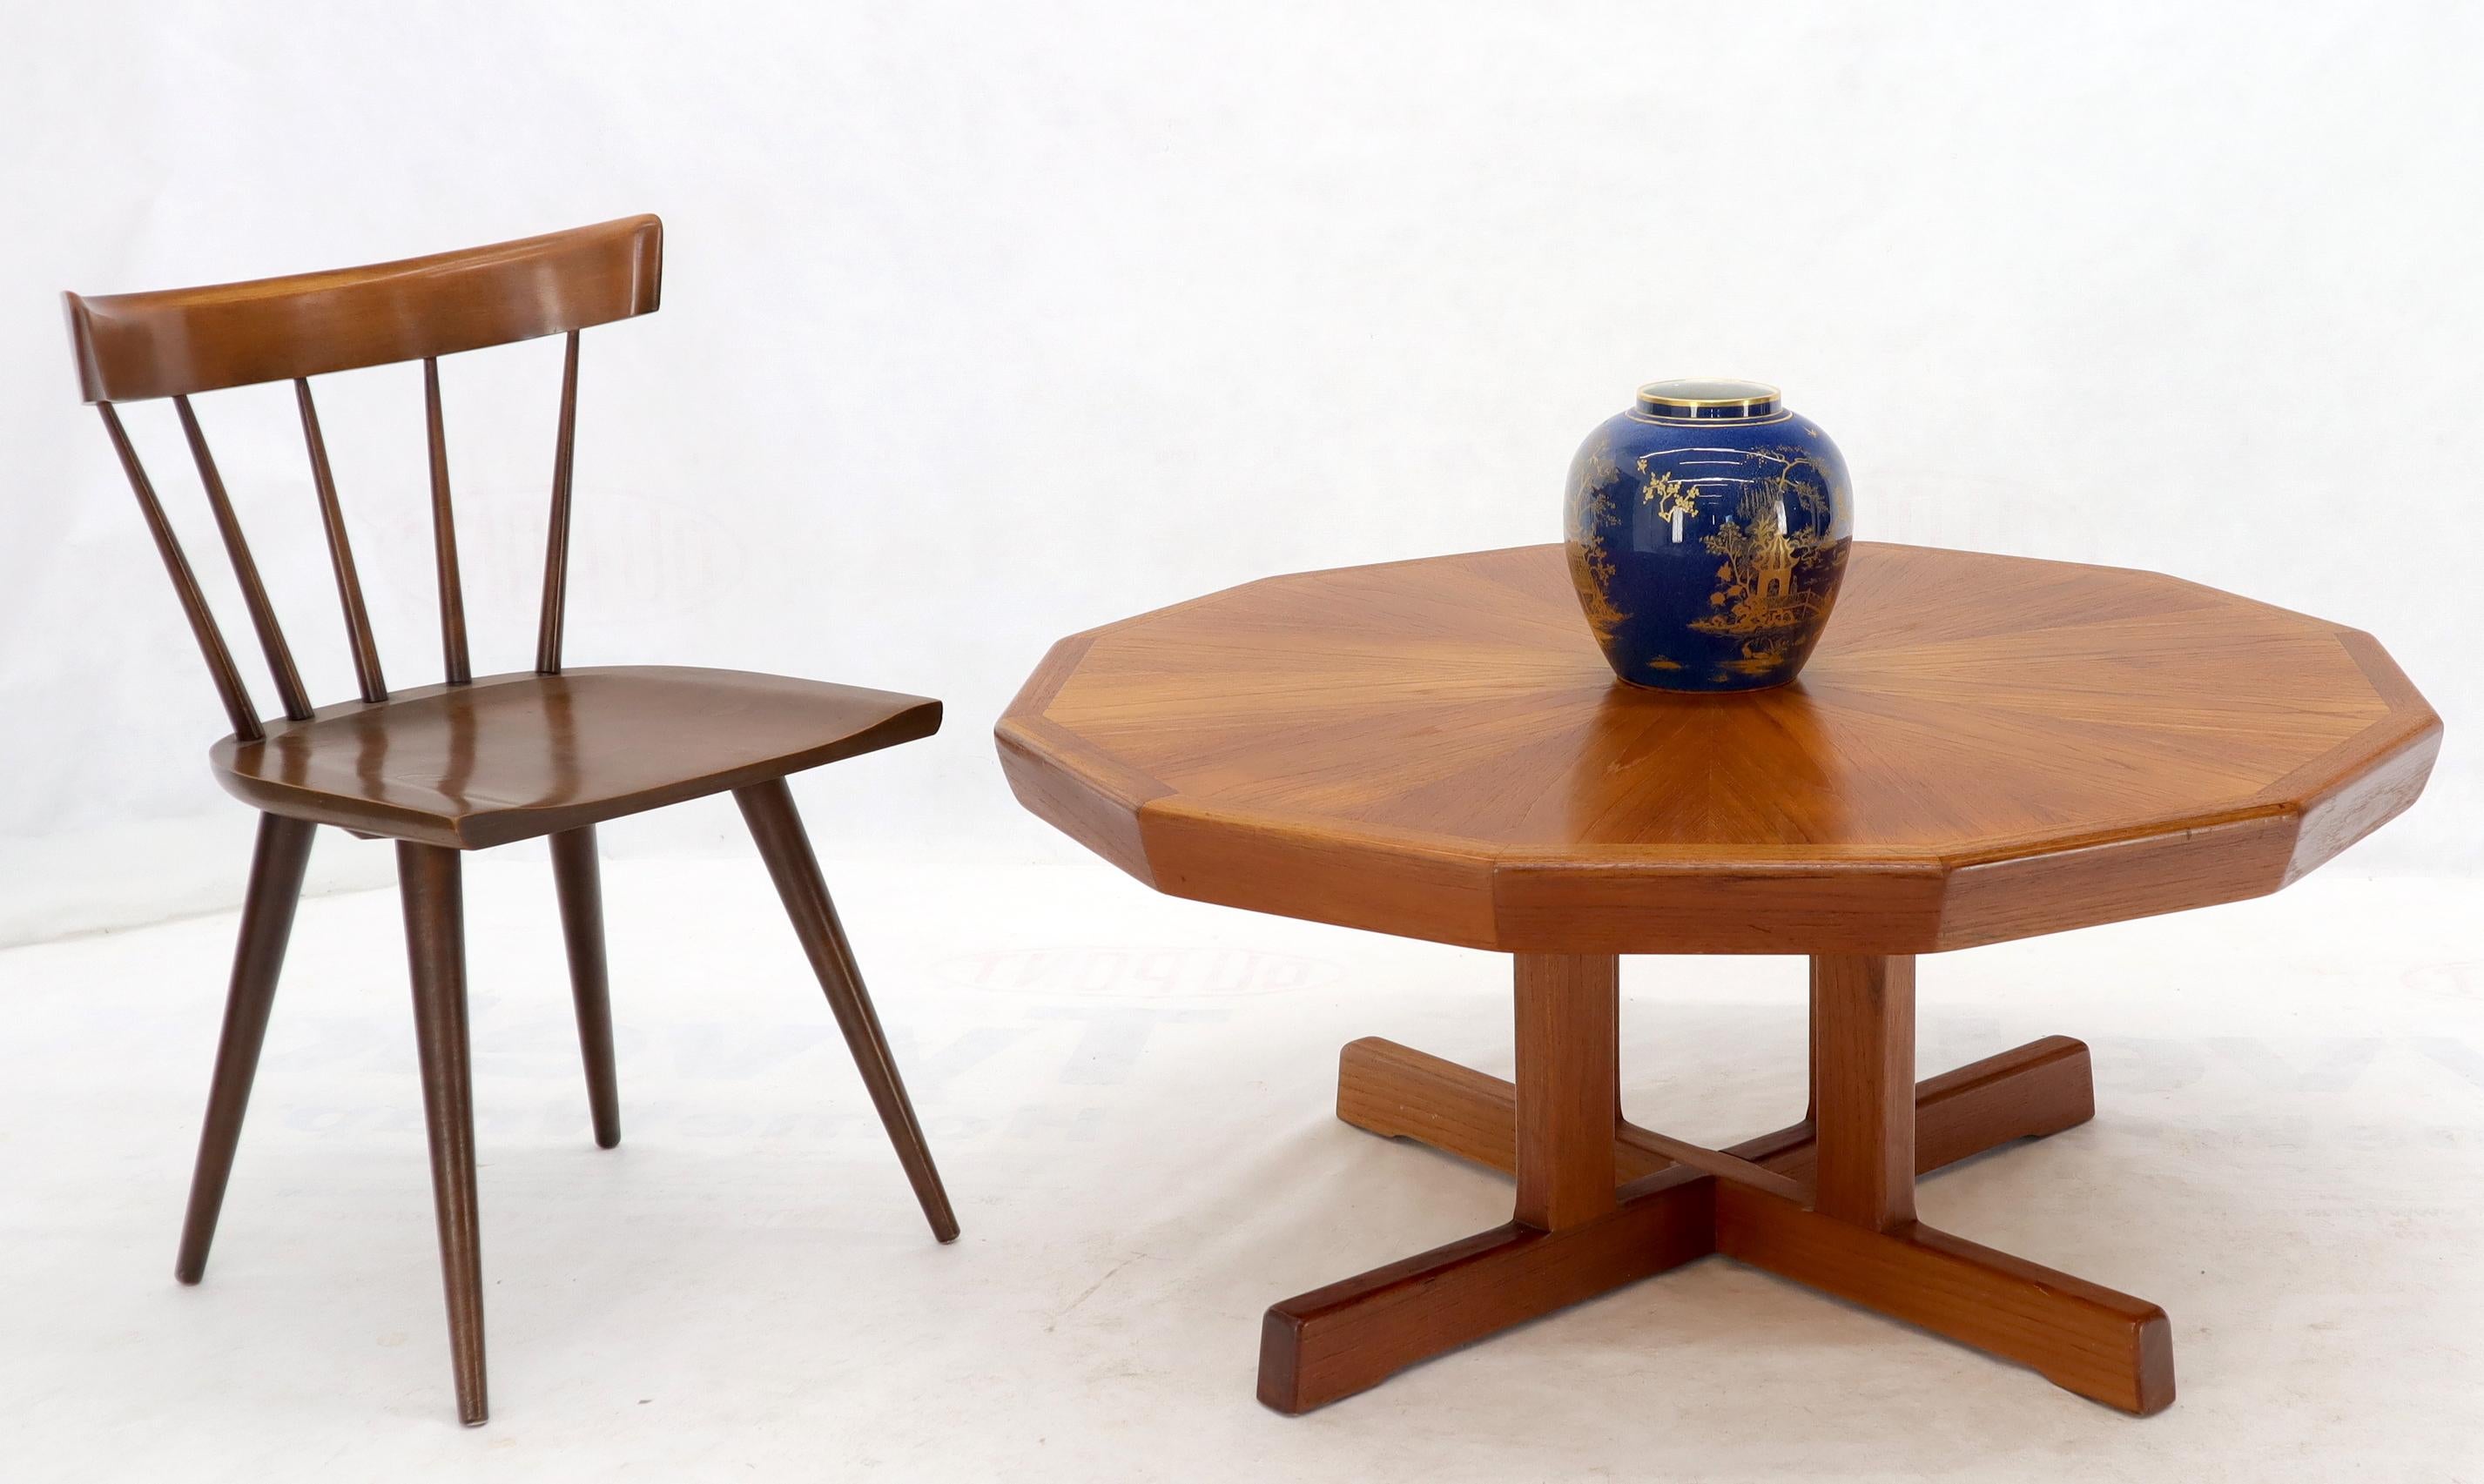 Danish modern teak heavy solid base coffee table. Beautiful teak wood pattern.